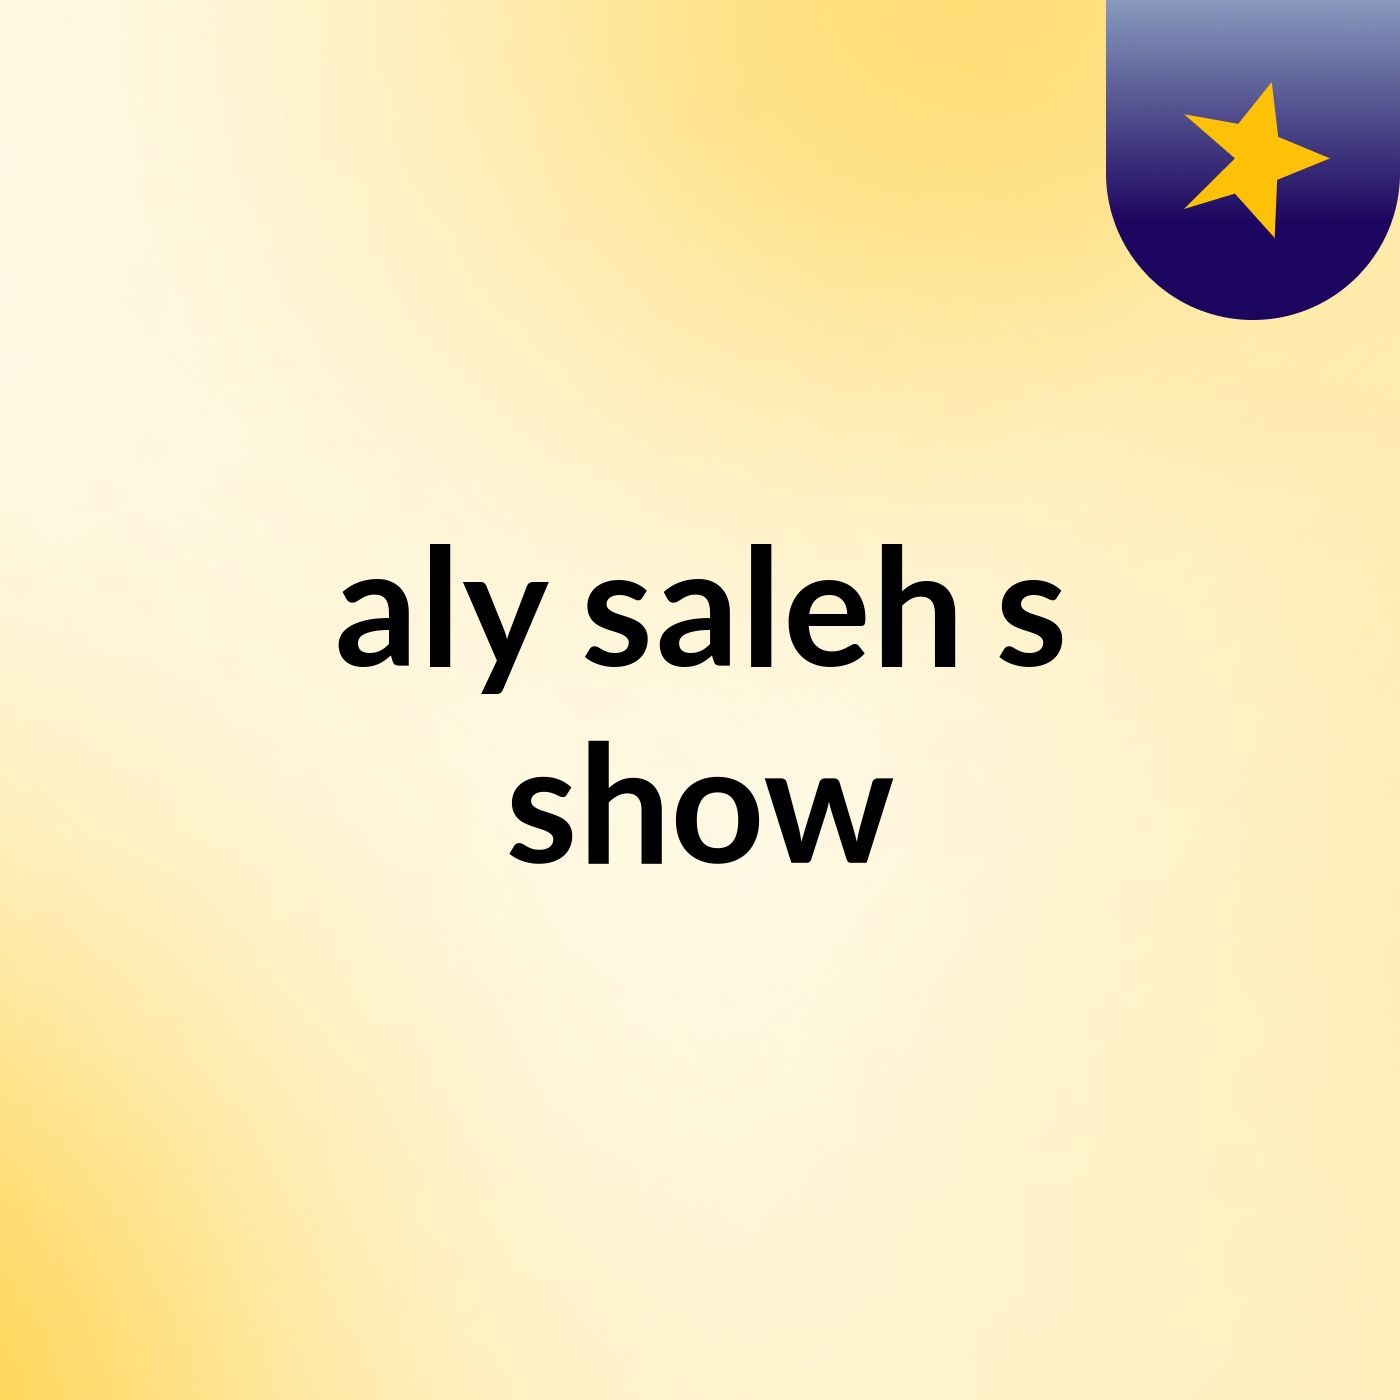 aly saleh's show